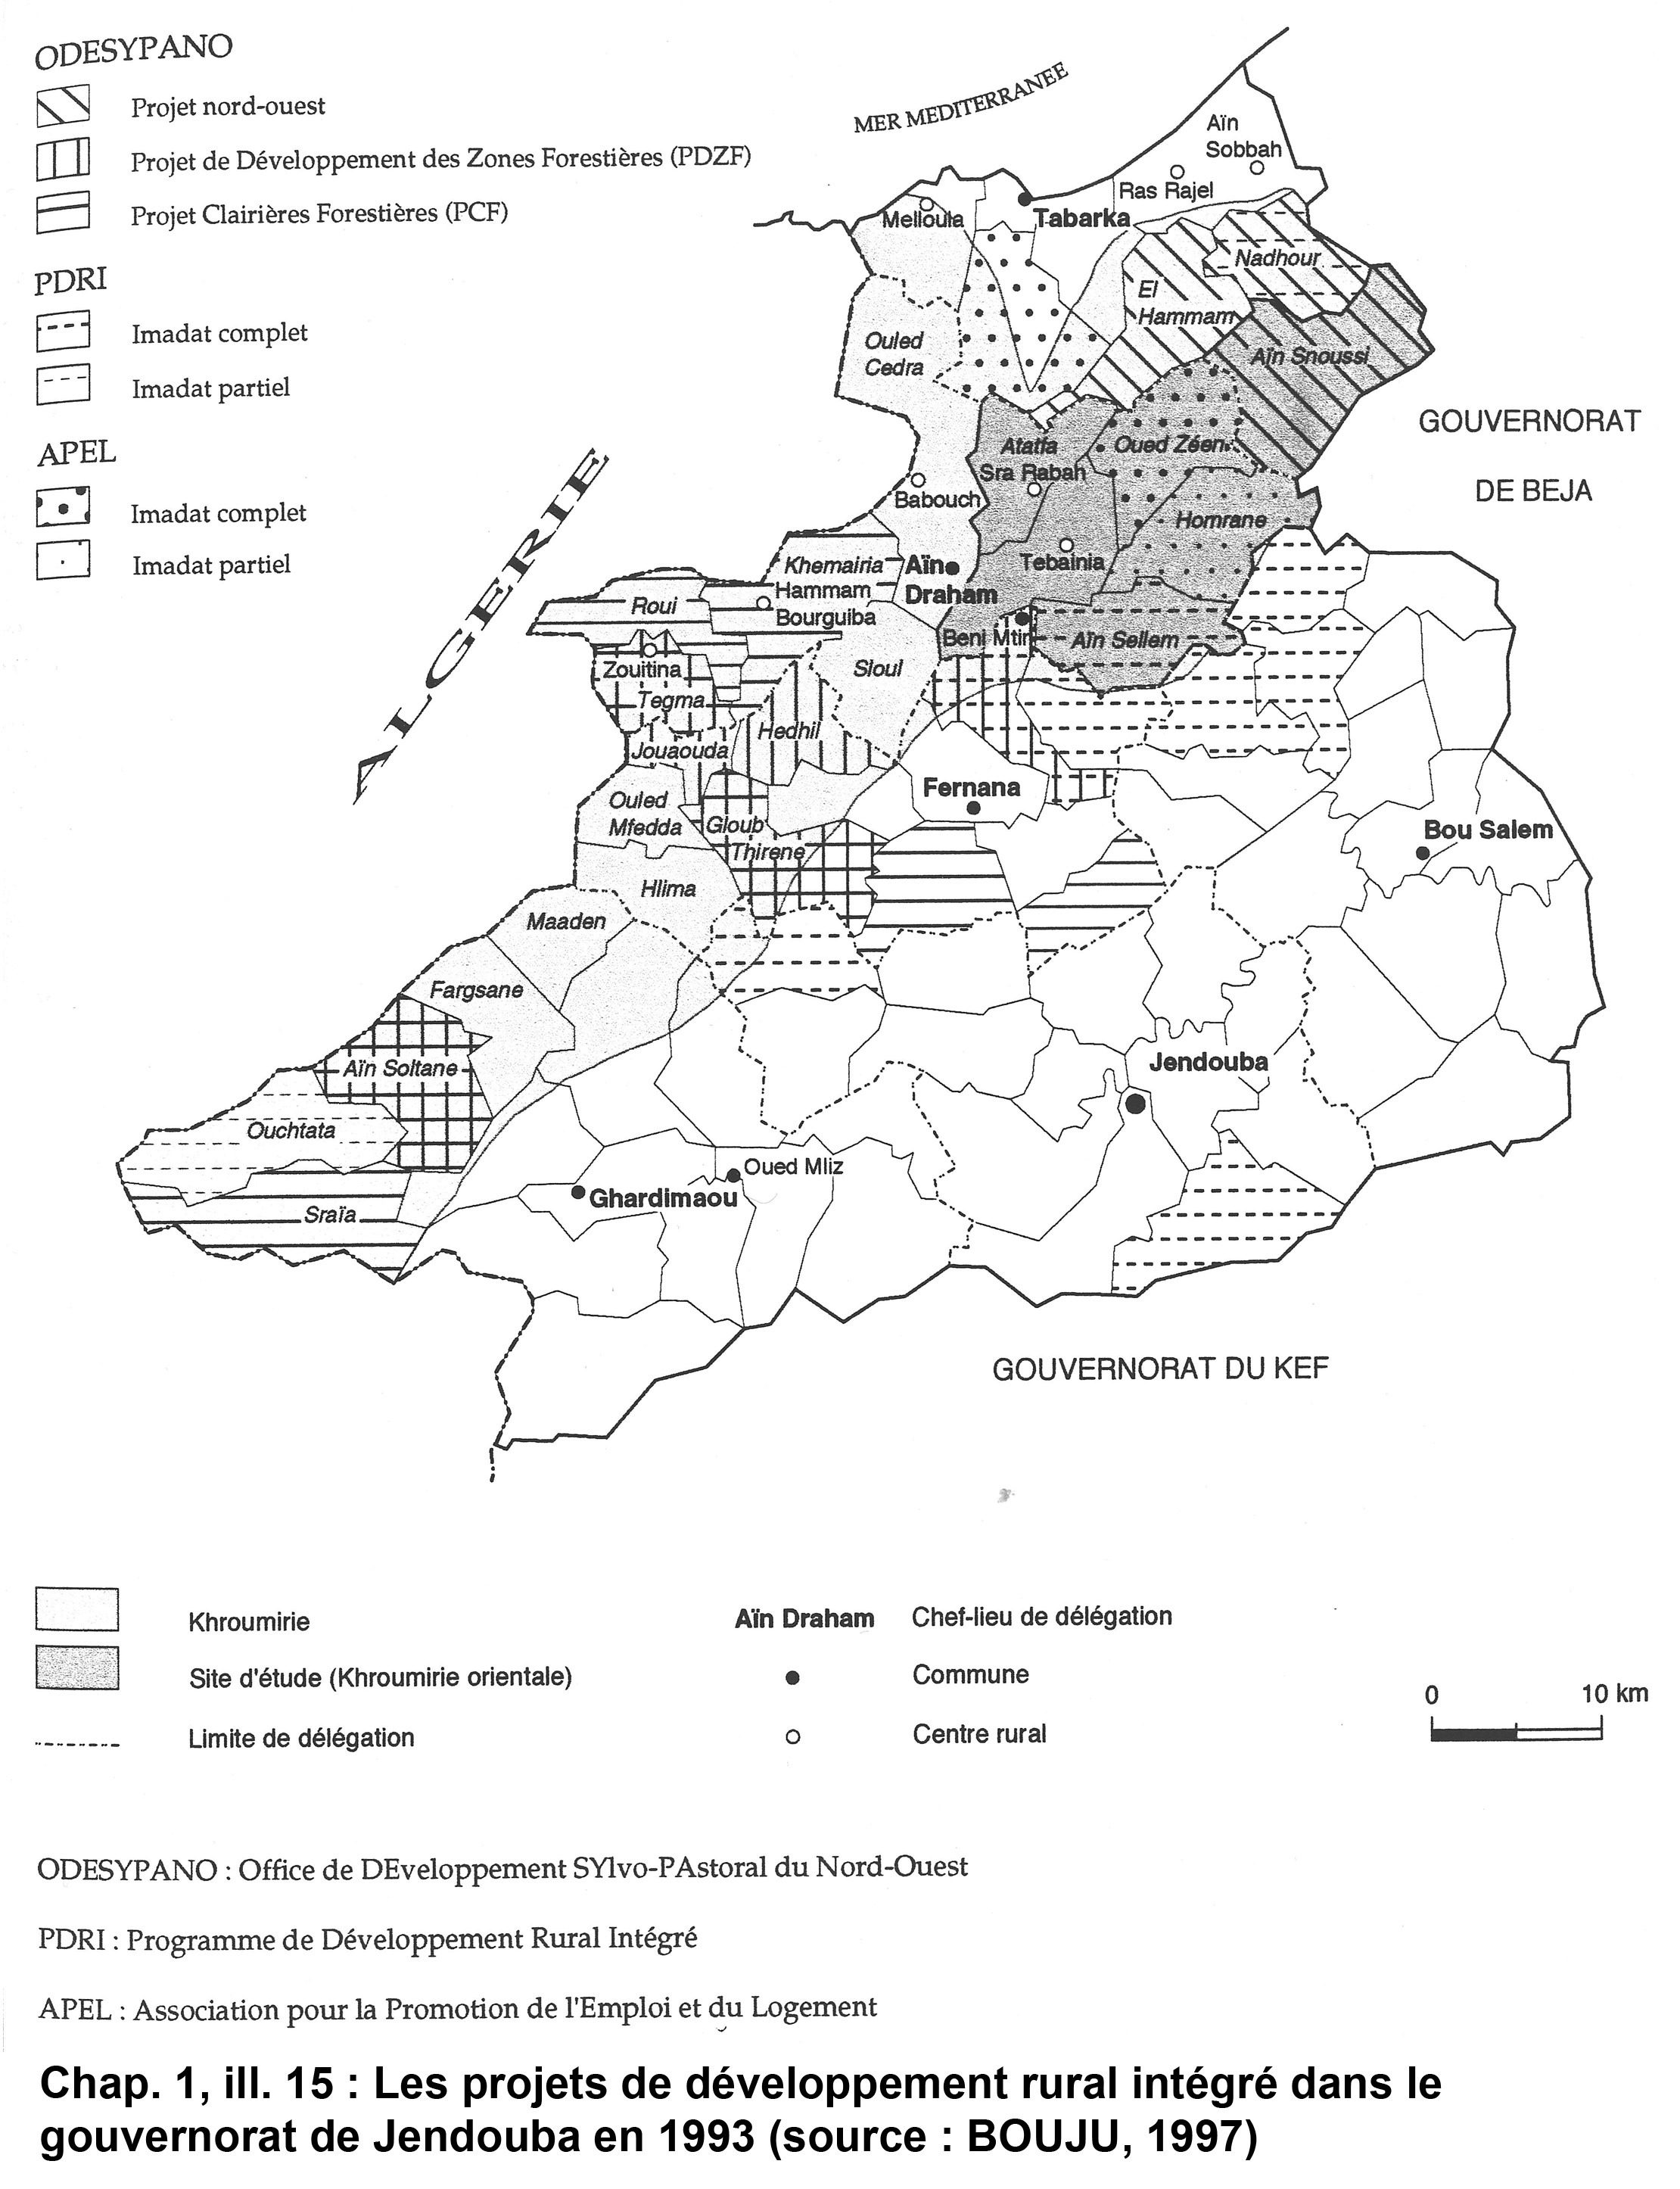 Illustration 15 : Les projets de développement rural intégré dans le gouvernorat de Jendouba en 1993